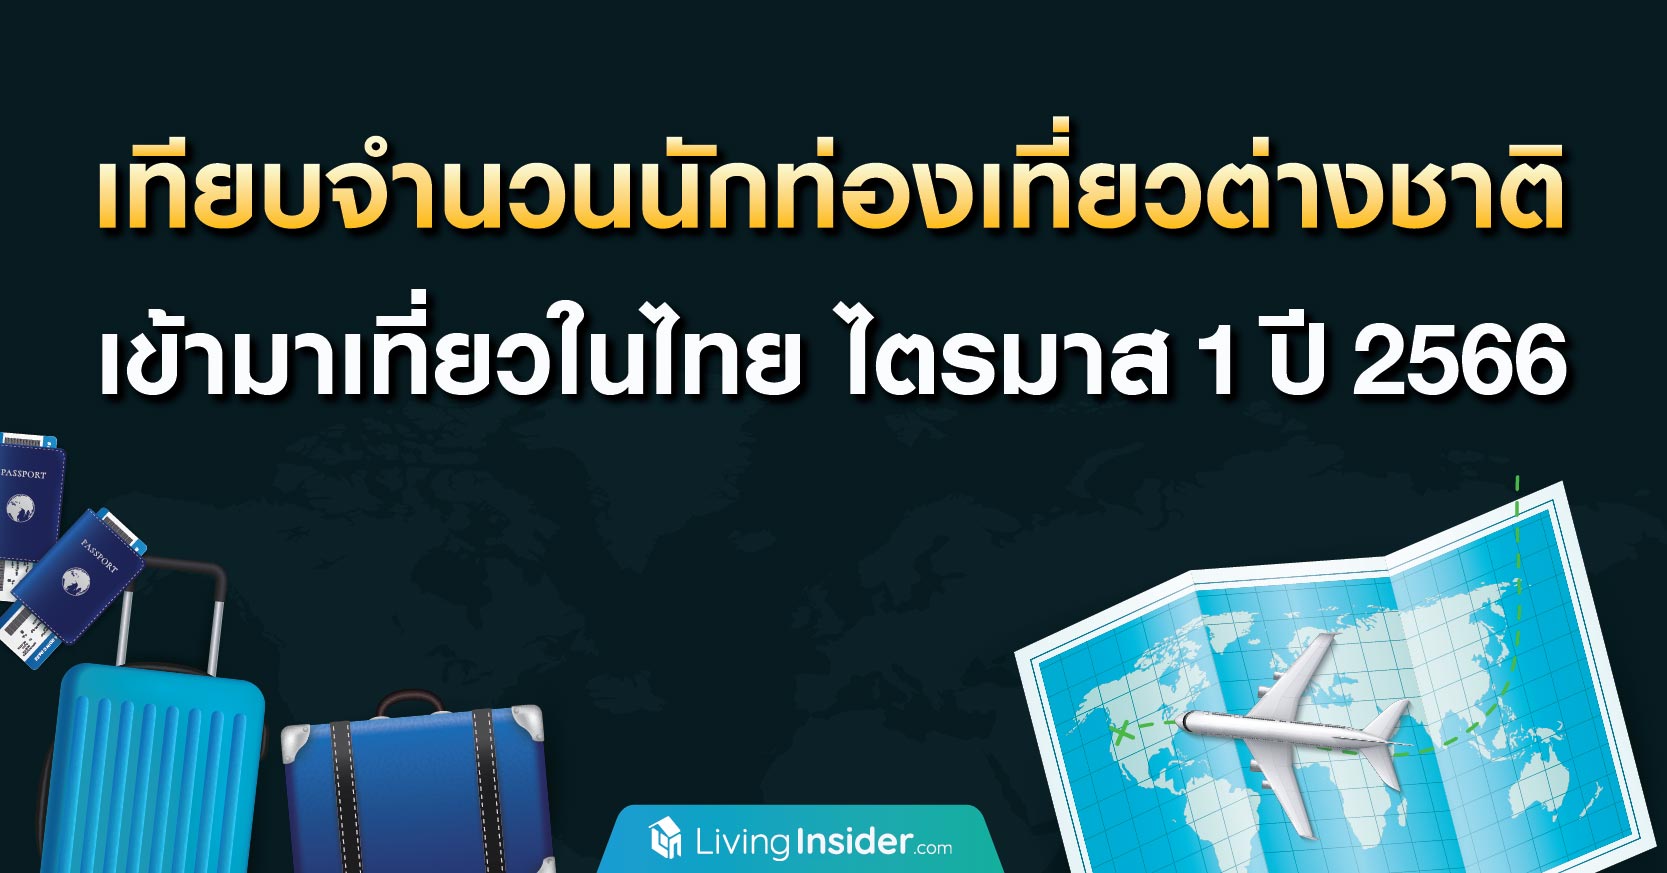 เทียบจำนวนนักท่องเที่ยวต่างชาติ เข้ามาเที่ยวในไทย ไตรมาส 1 ปี 2566